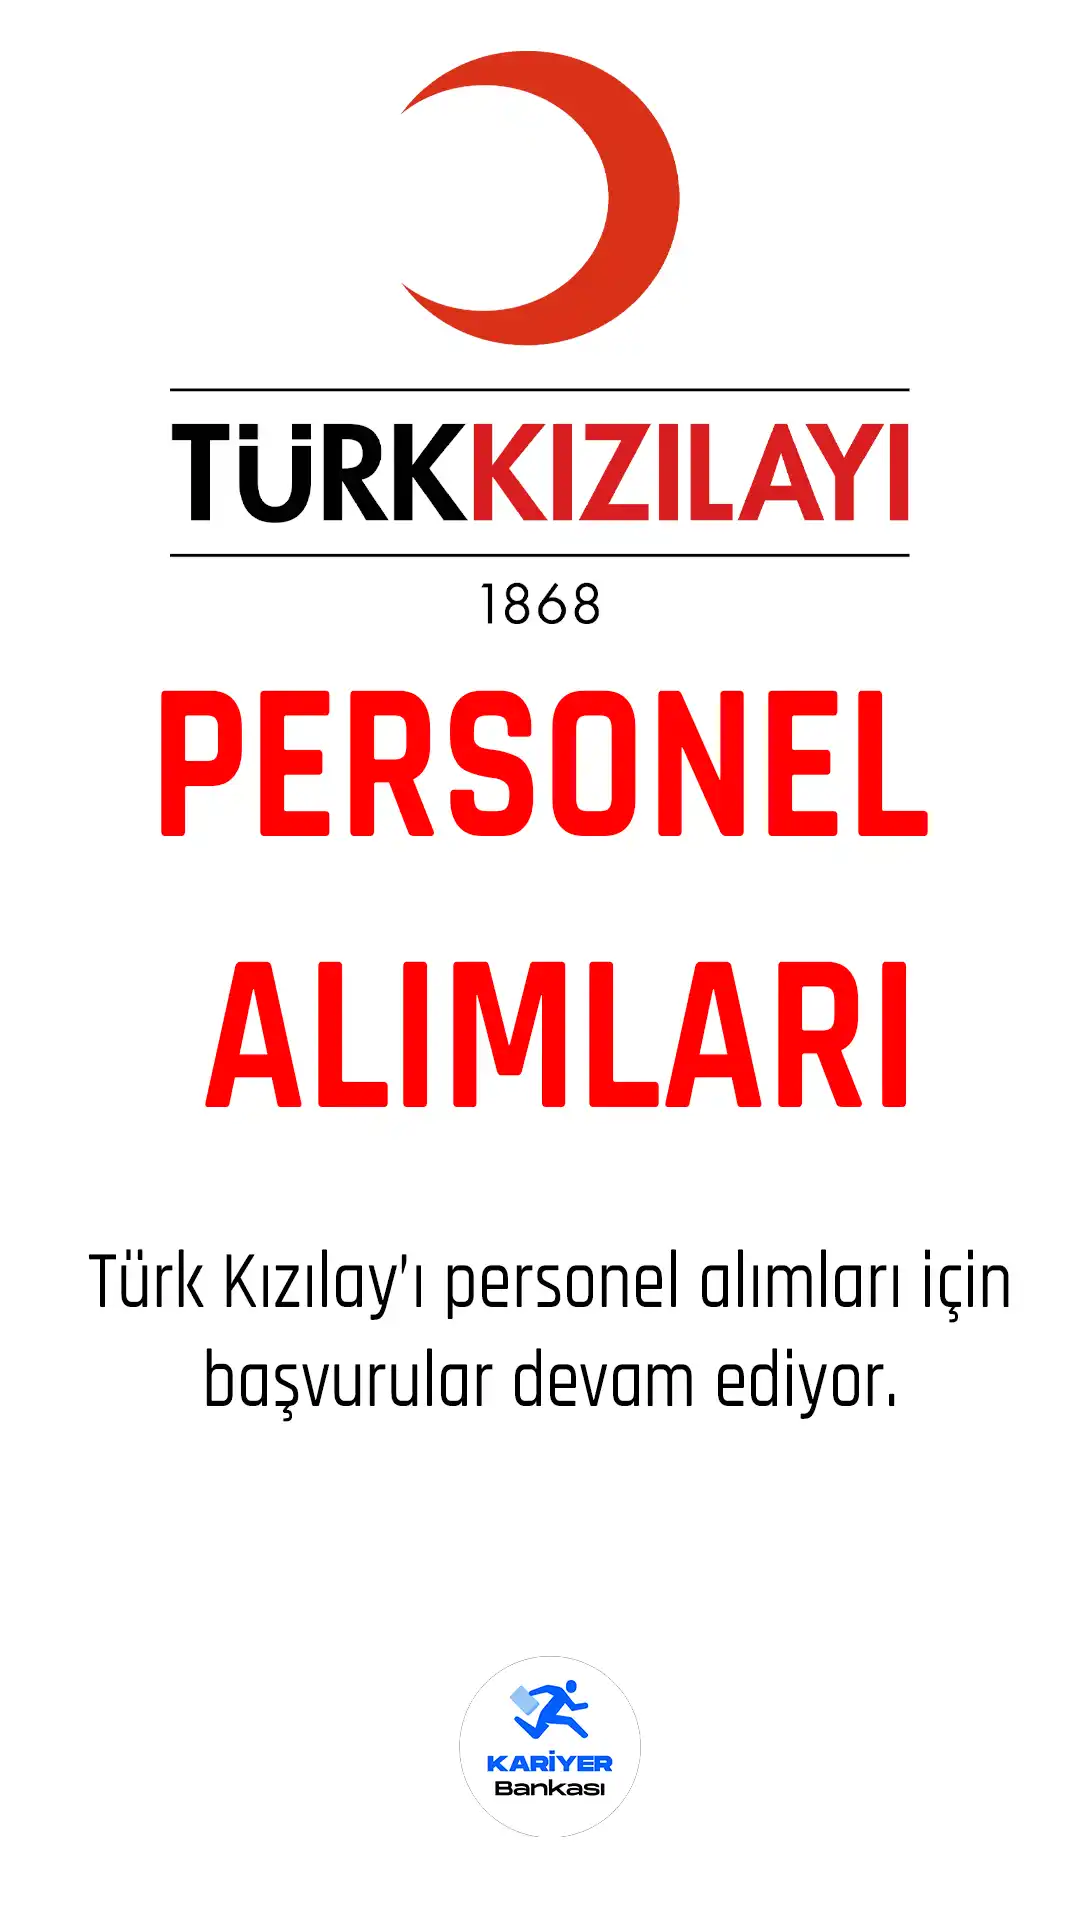 Türk kızılay personel alımları için başvuru işlemleri sürüyor.